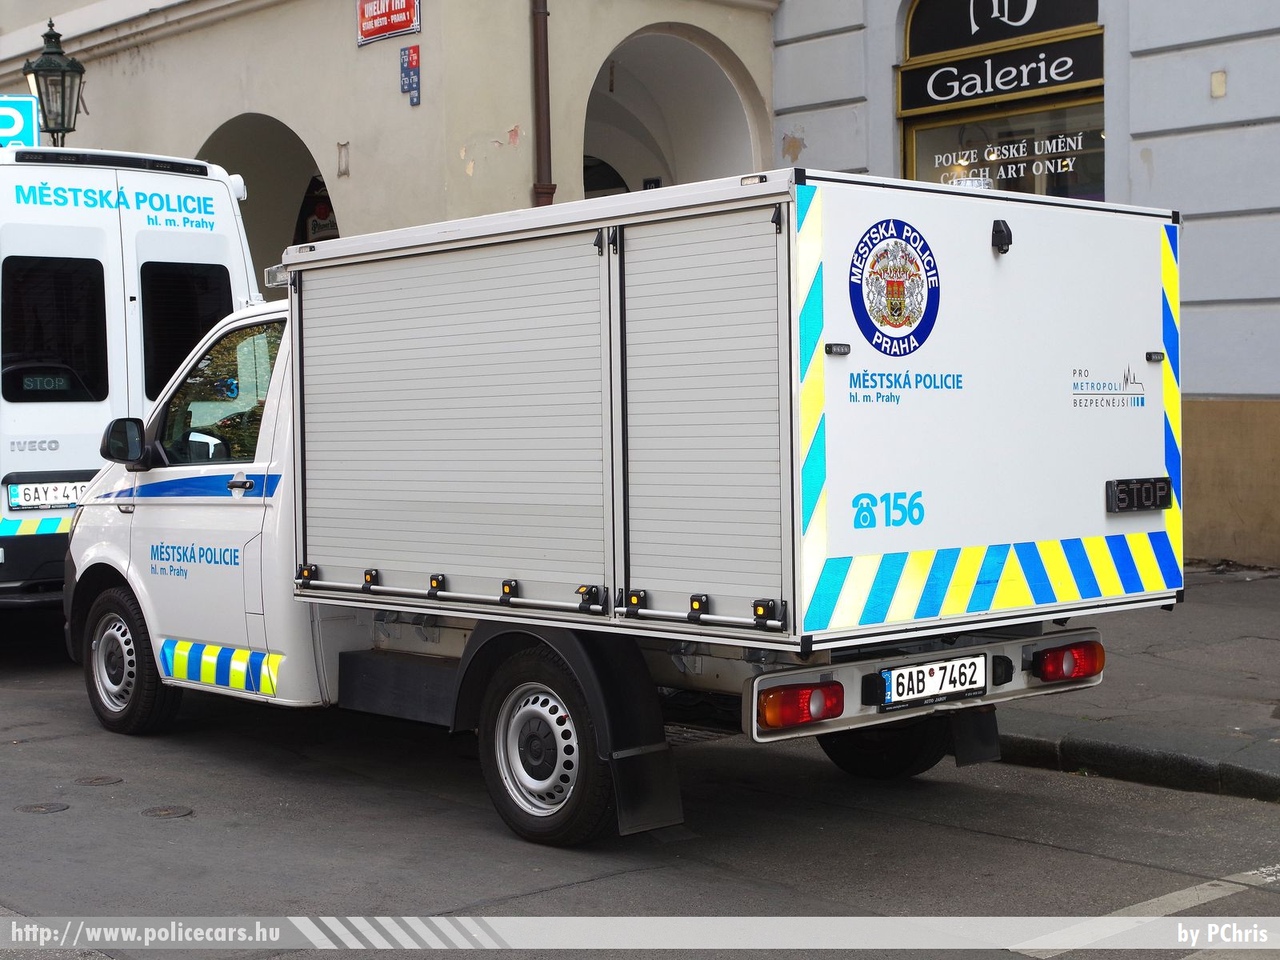 Volkswagen Transporter T6, fotó: PChris
Keywords: rendőr cseh Csehország rendőrautó rendőrség police policecar Czech